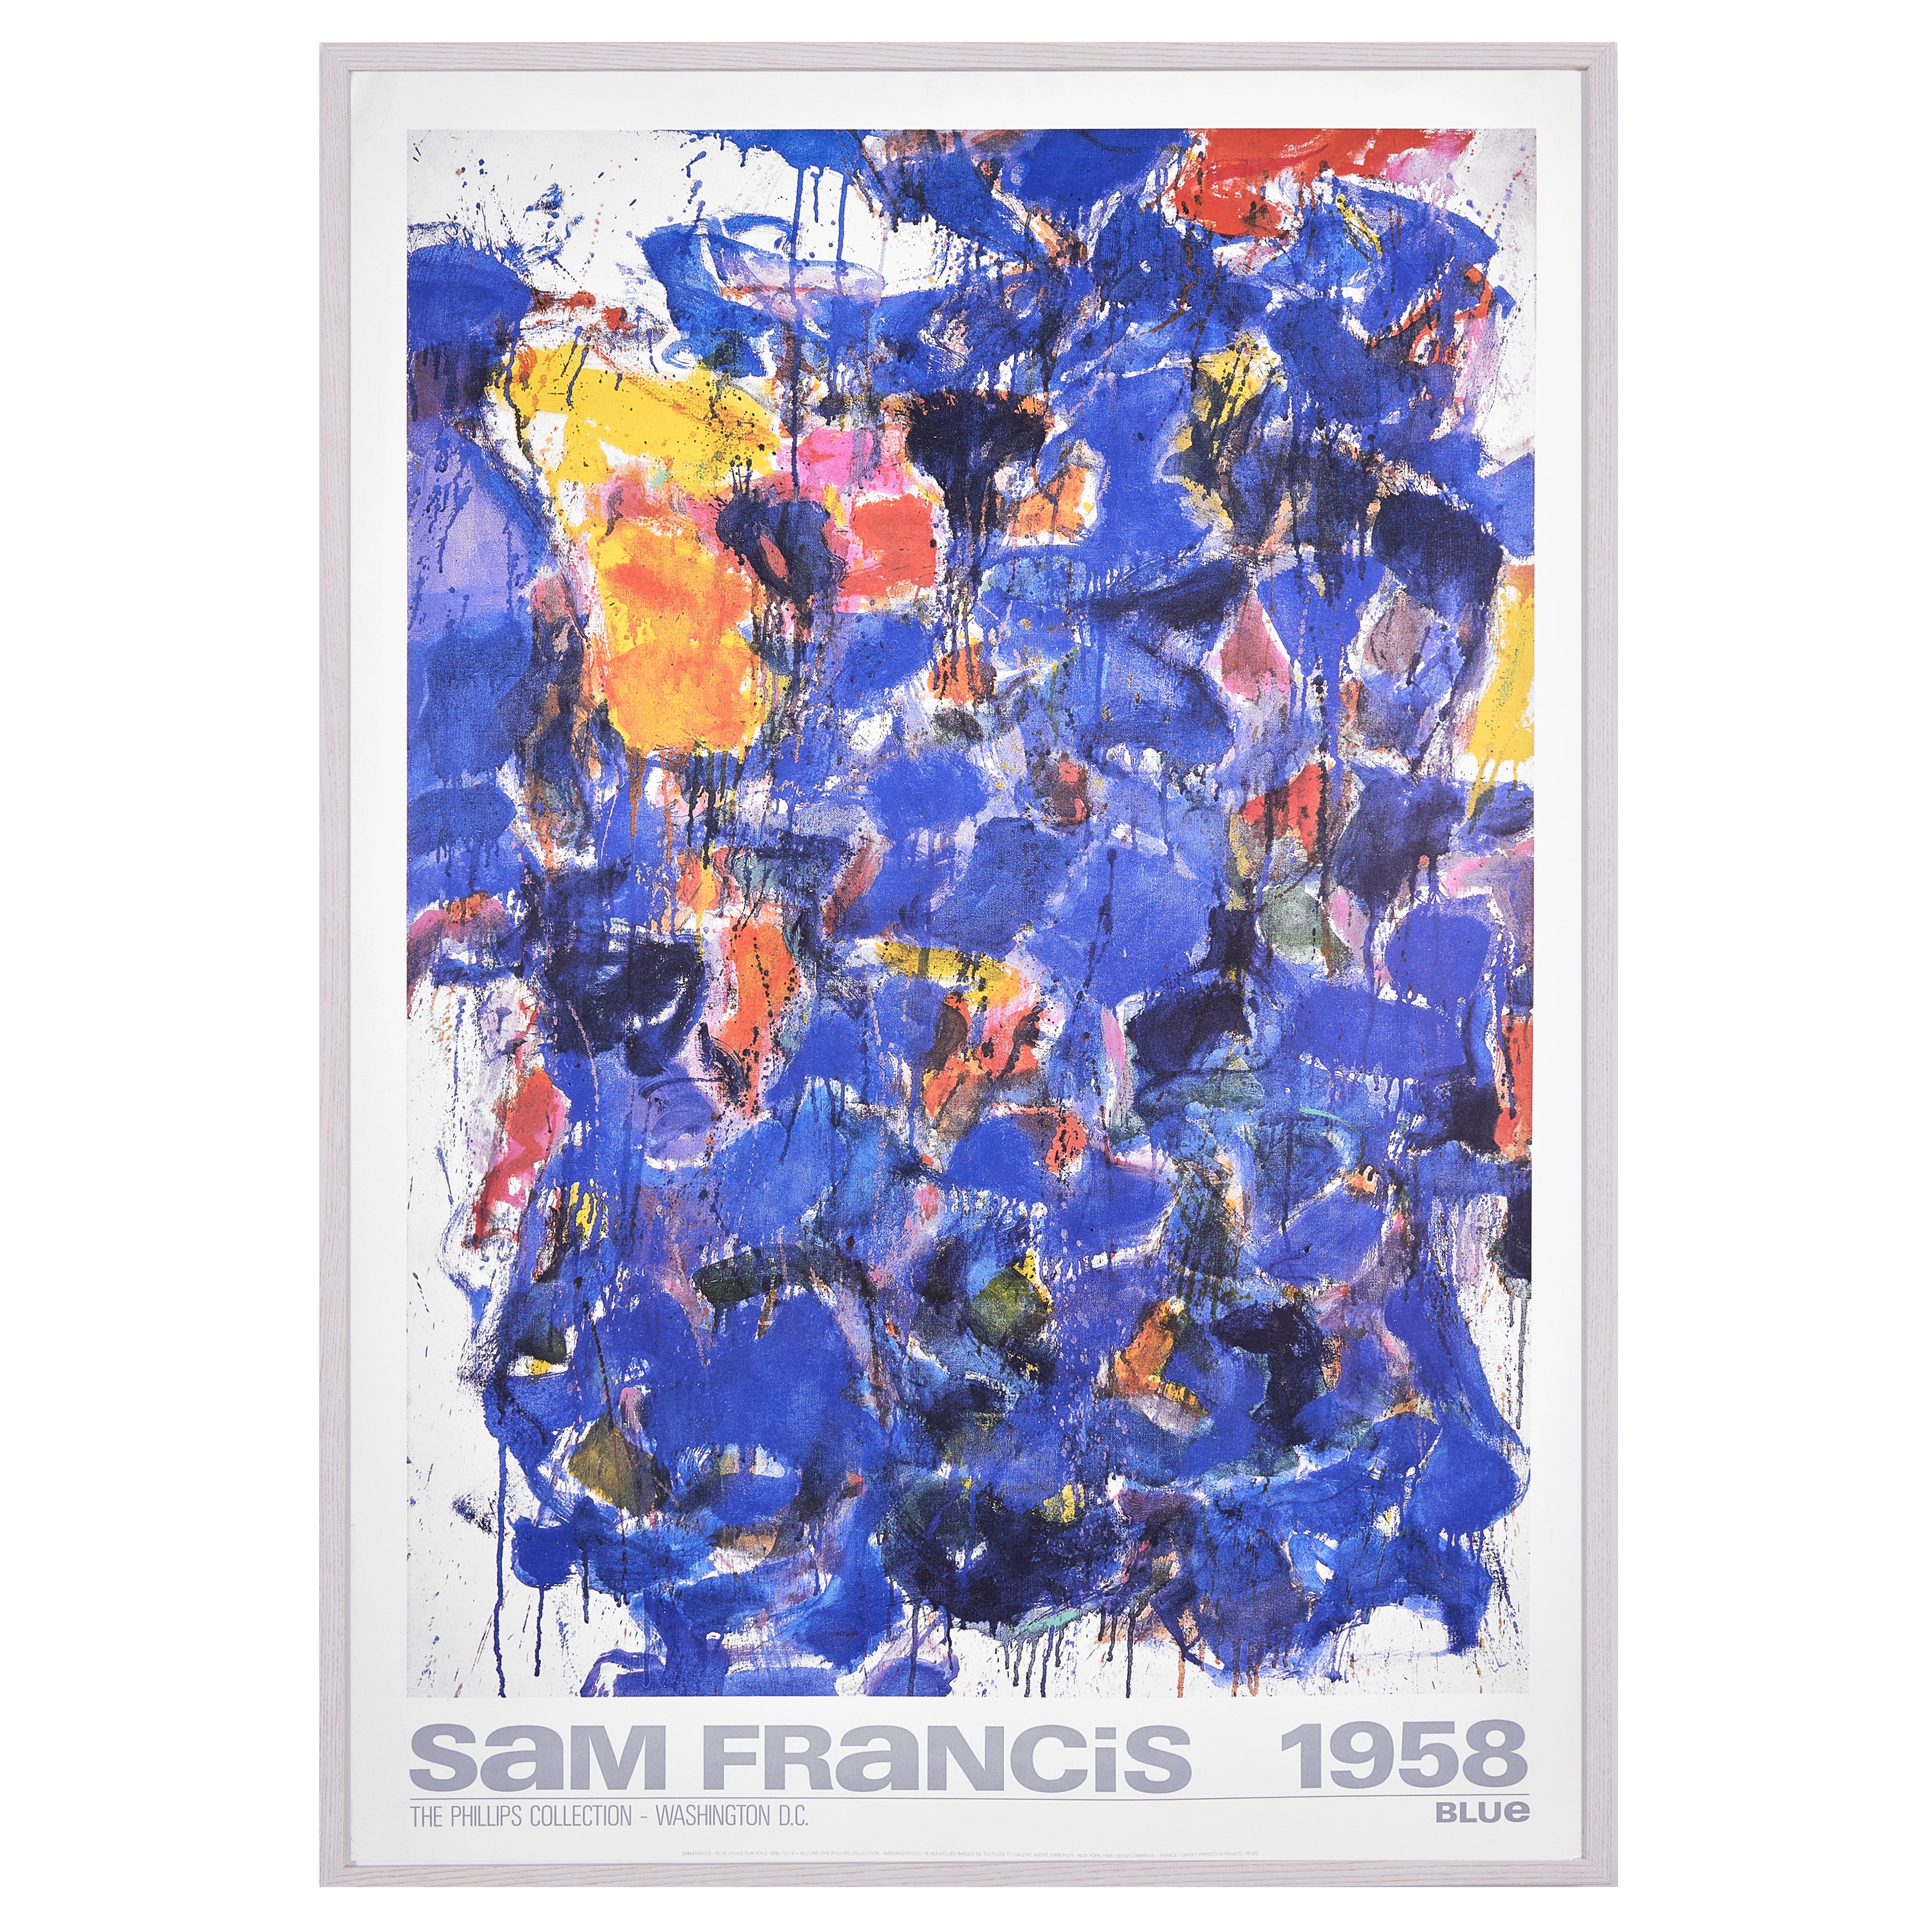 【限定10枚】BLUE 1958 - THE PHILLIPS COLLECTION - WASHINGTON D.C. 1988 / サム・フランシス